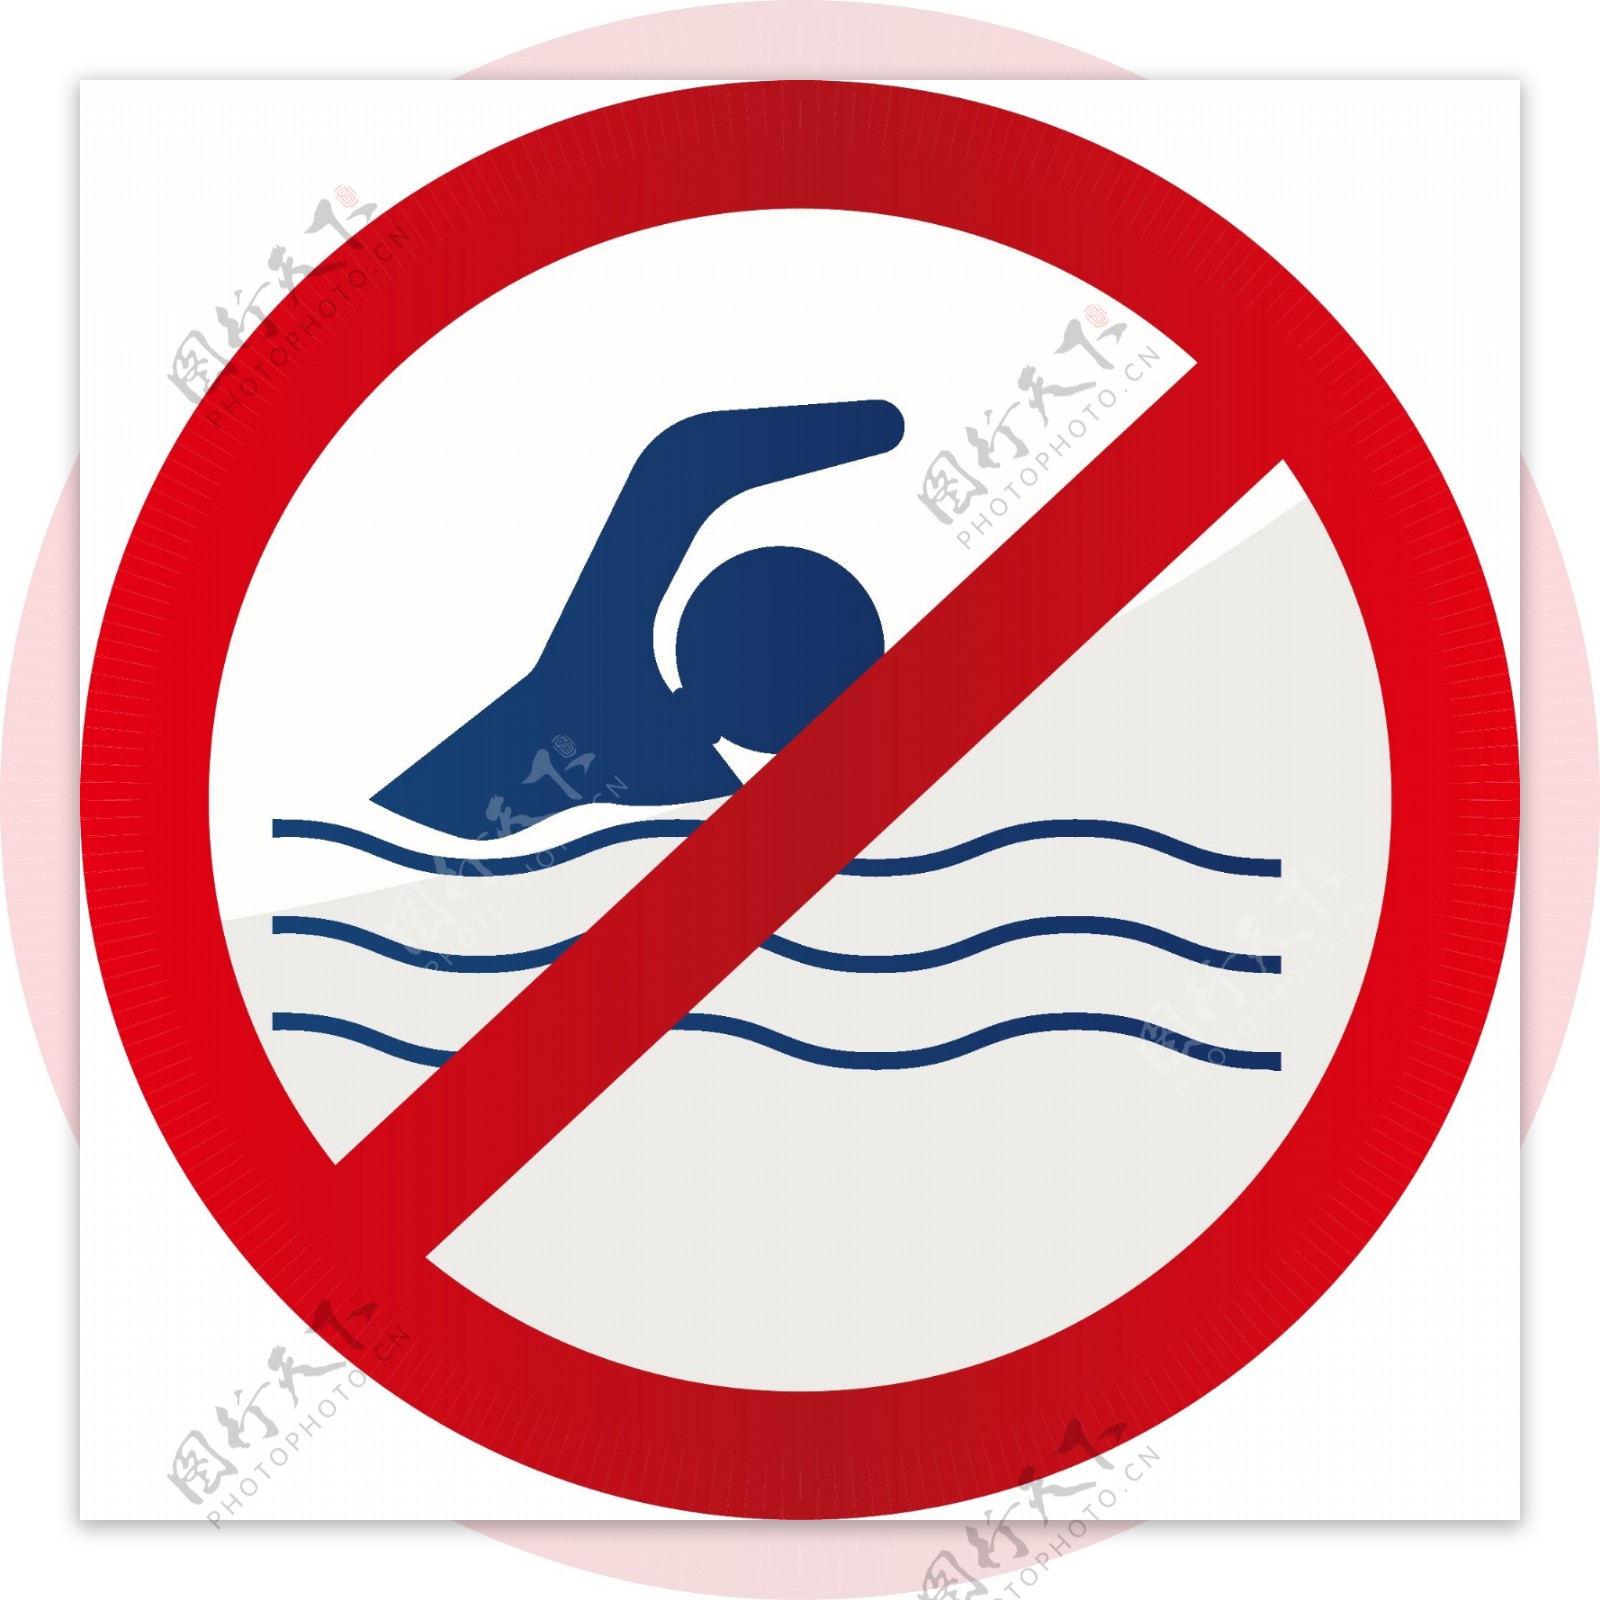 禁止游泳图标设计